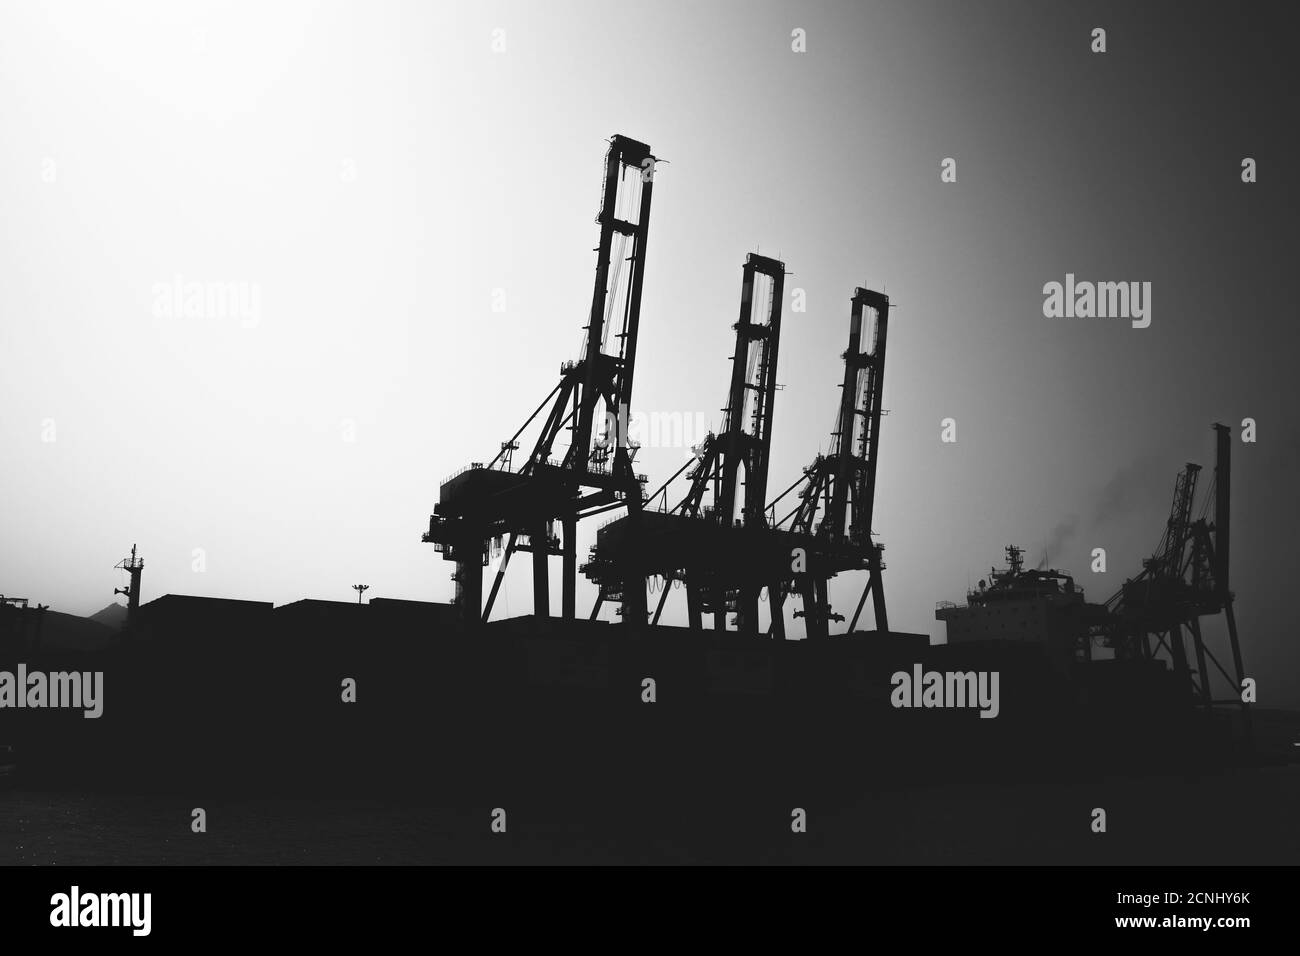 Portique grues photo silhouette, vue de port de cargaison industrielle, noir et blanc Banque D'Images